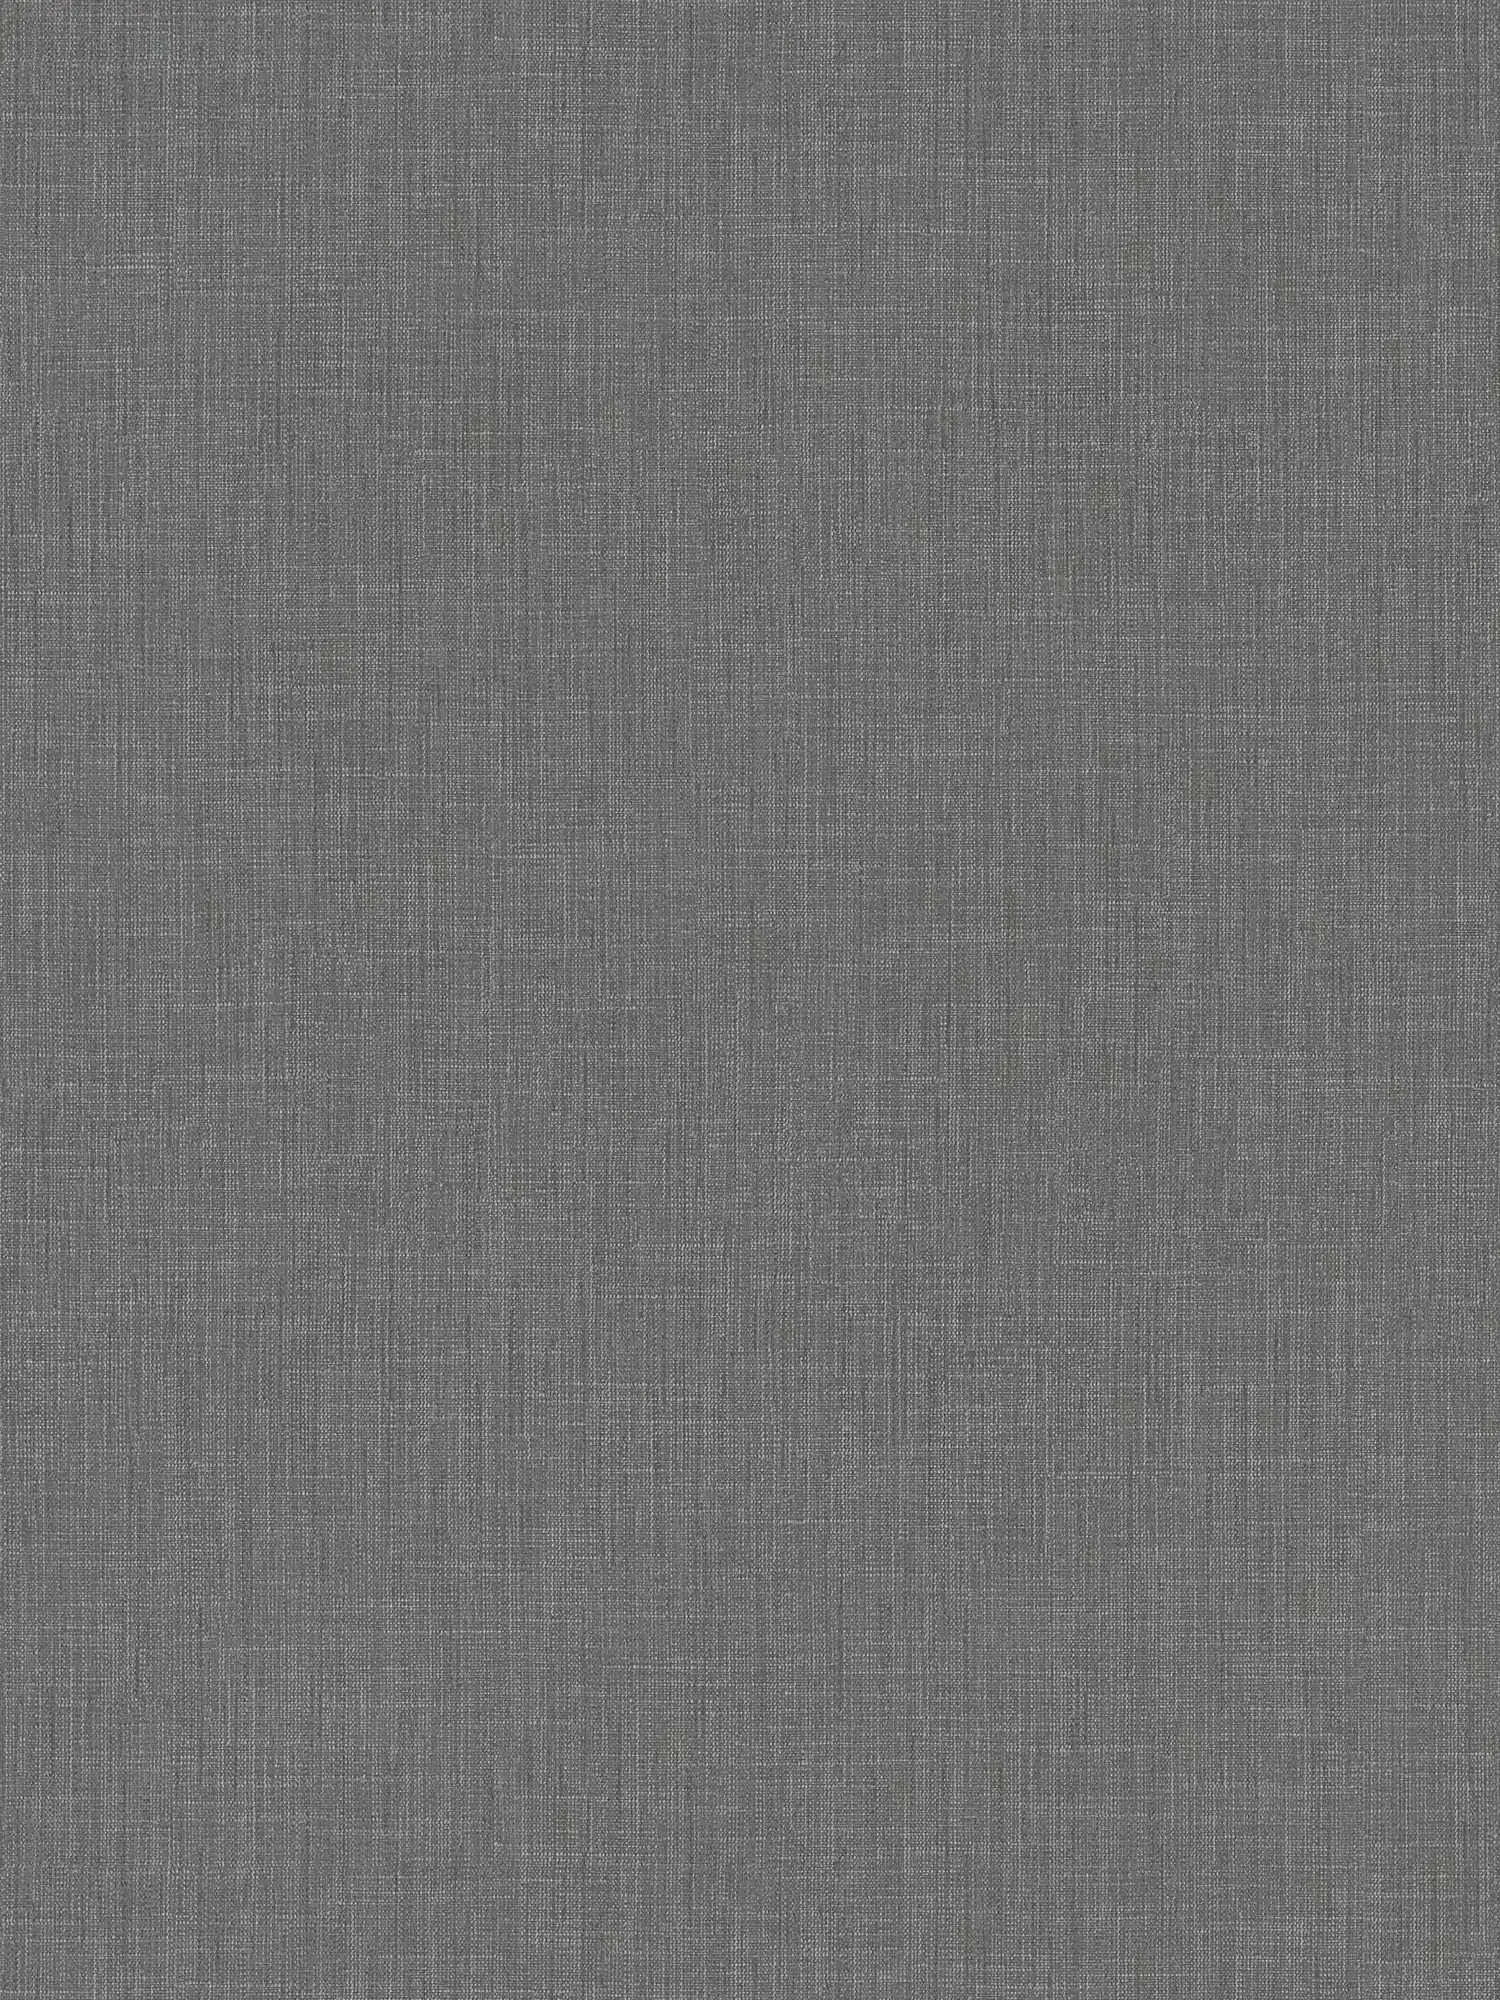 Carta da parati grigio screziato con disegno tessile in stile bouclé
